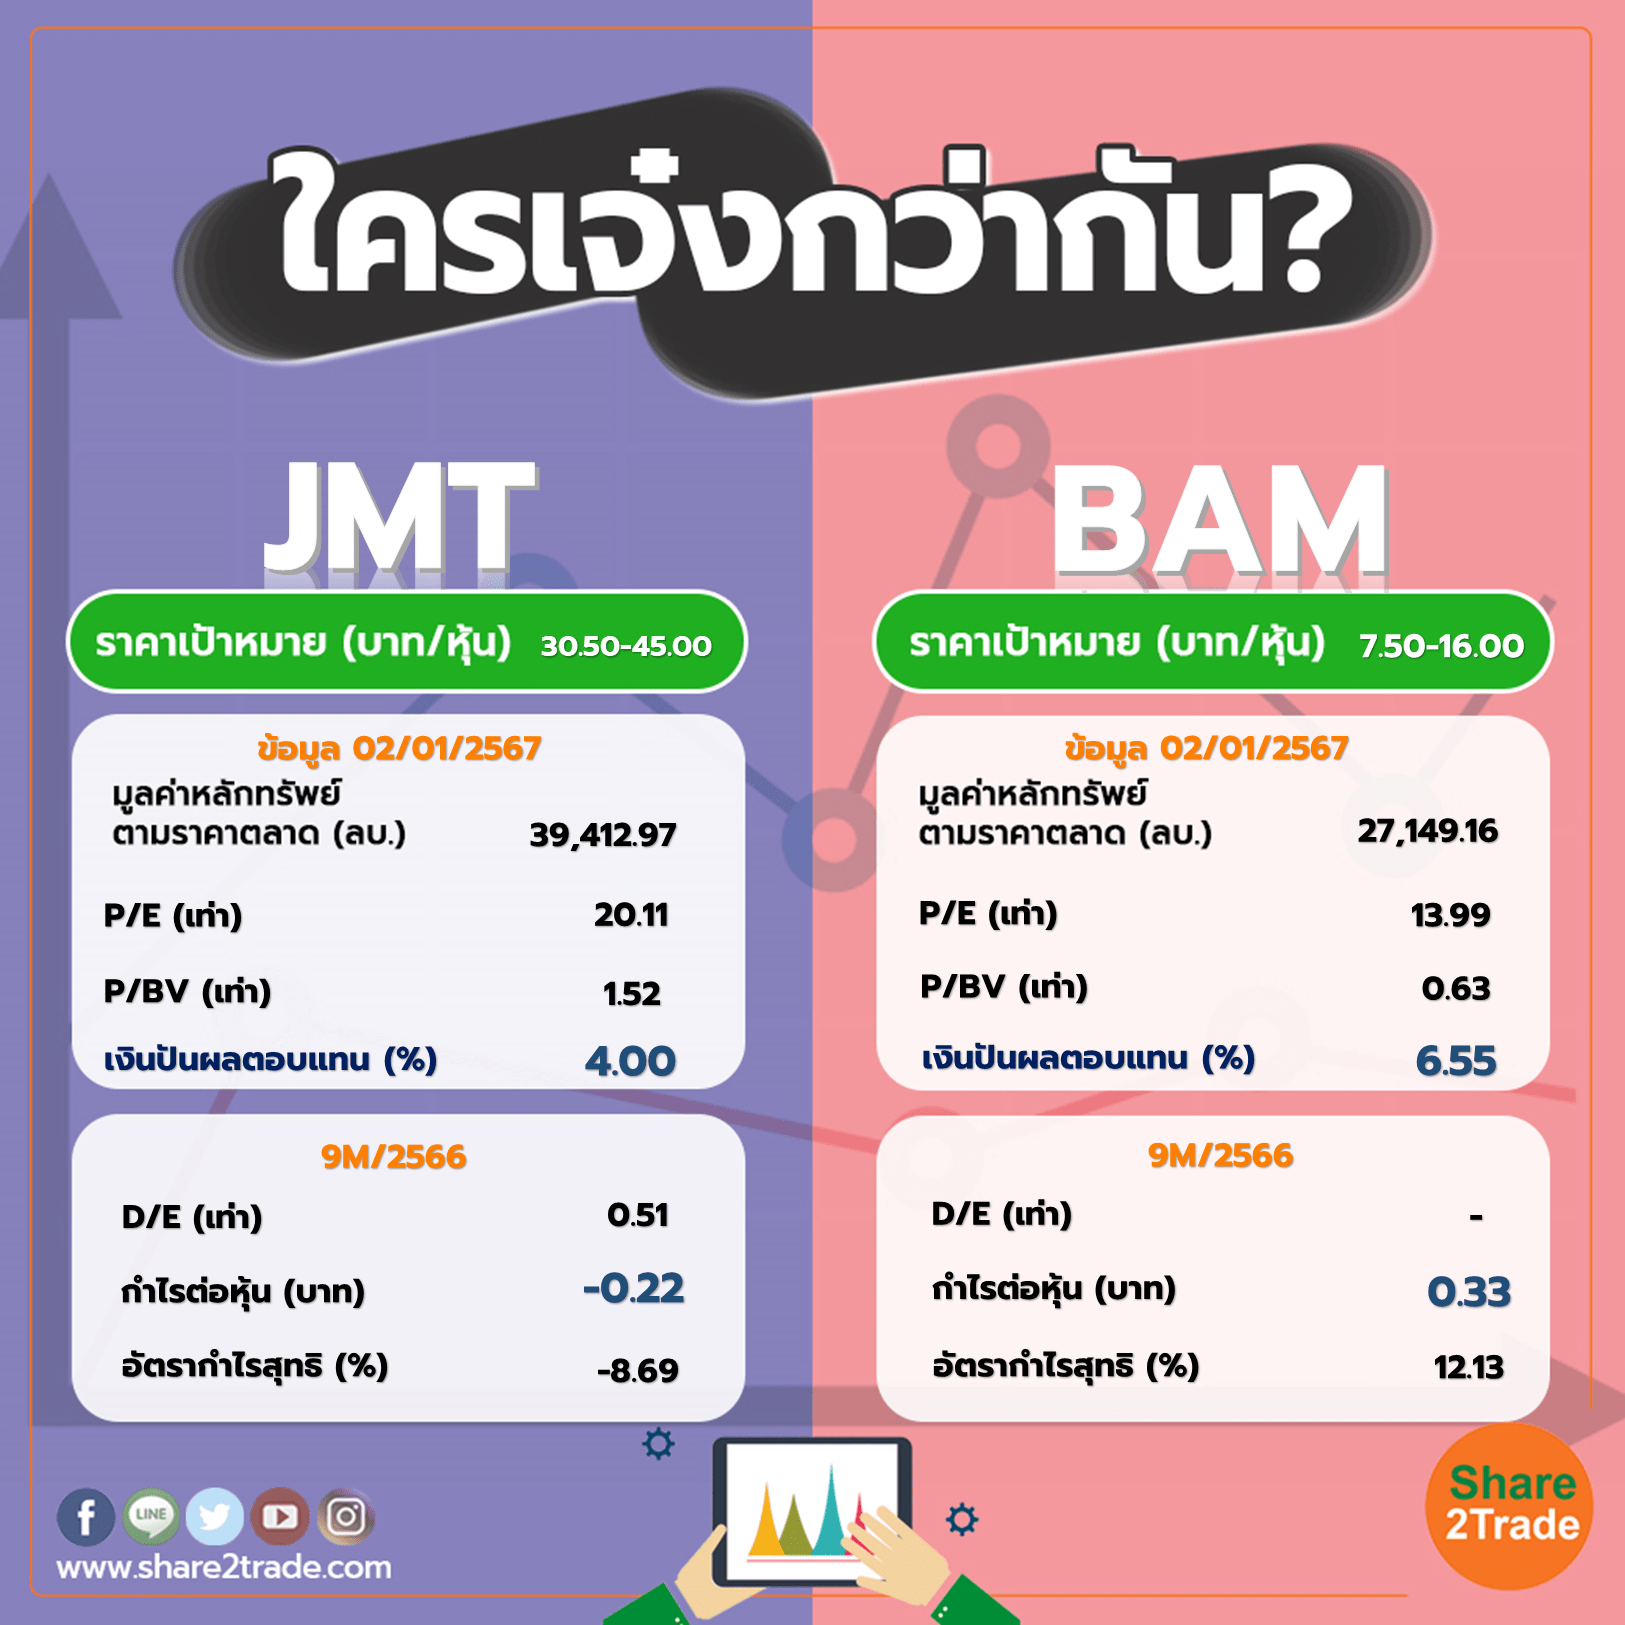 ใครเจ๋งกว่ากัน "JMT" VS "BAM"